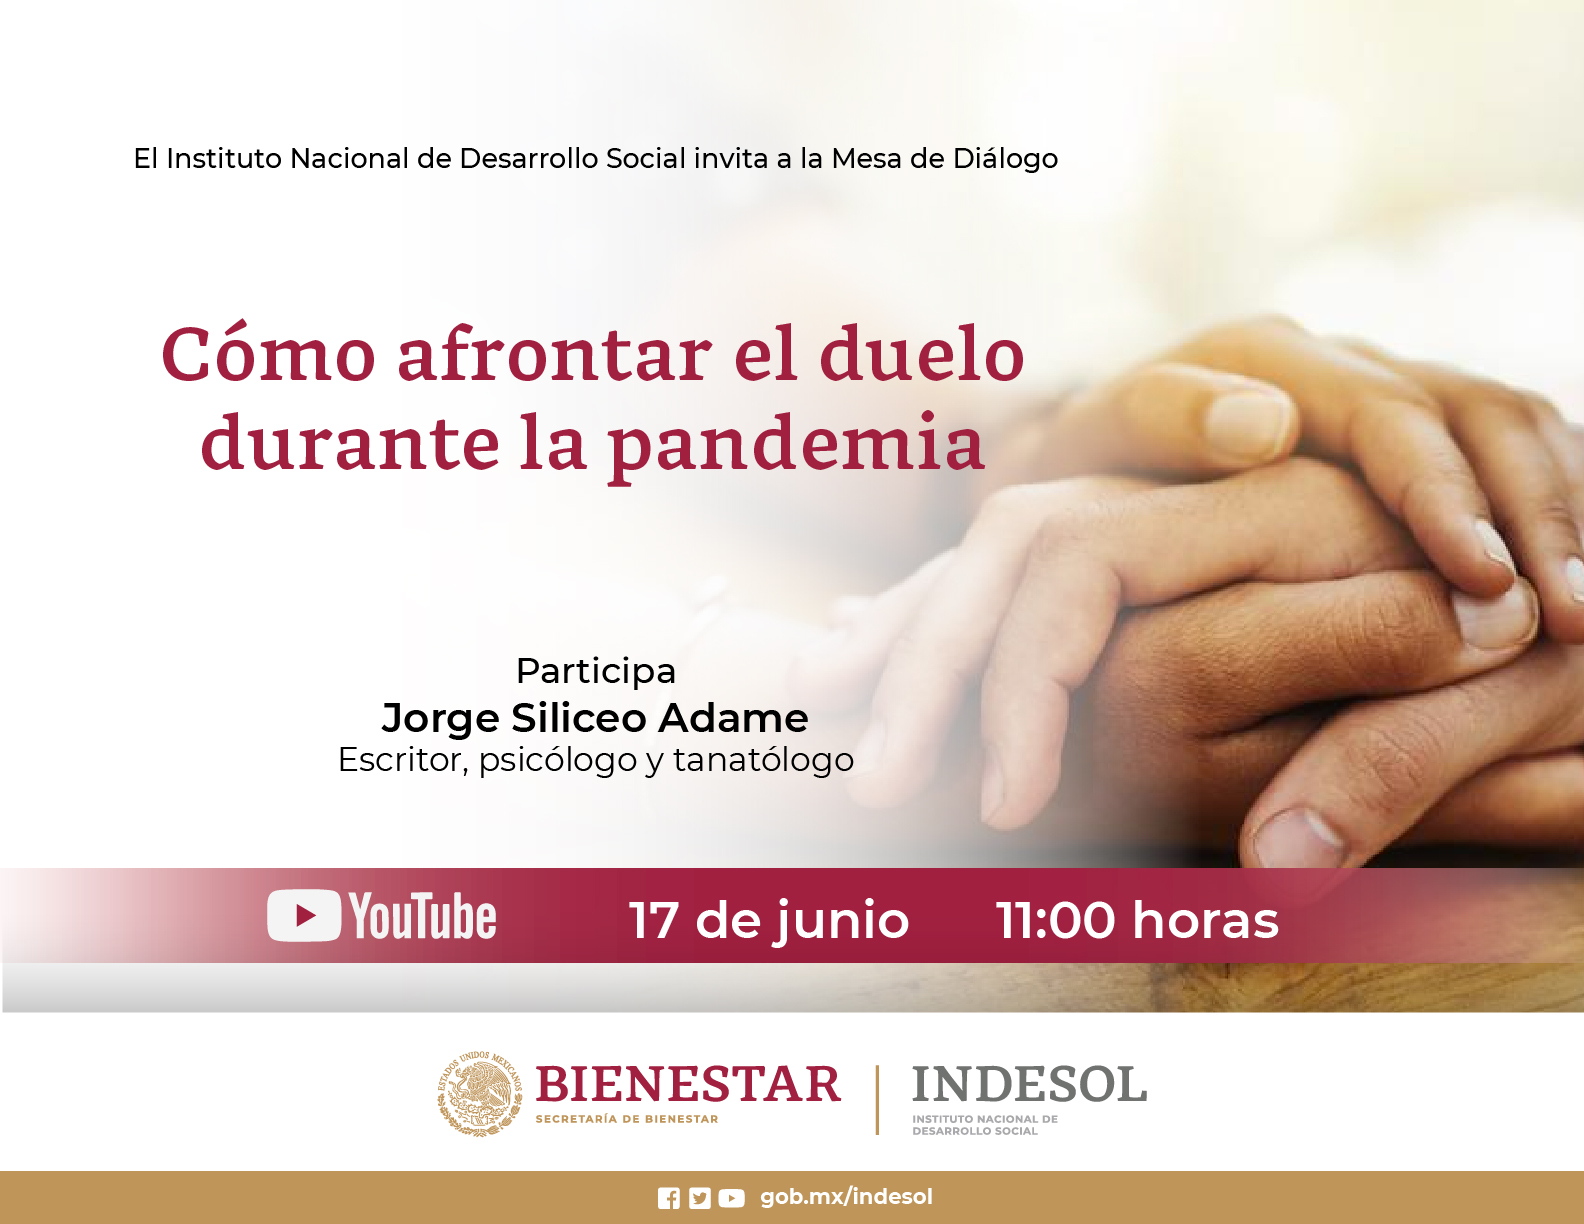 Mesa de Diálogo Indesol: Cómo afrontar el duelo durante la pandemia
17 de junio, 11 hrs.